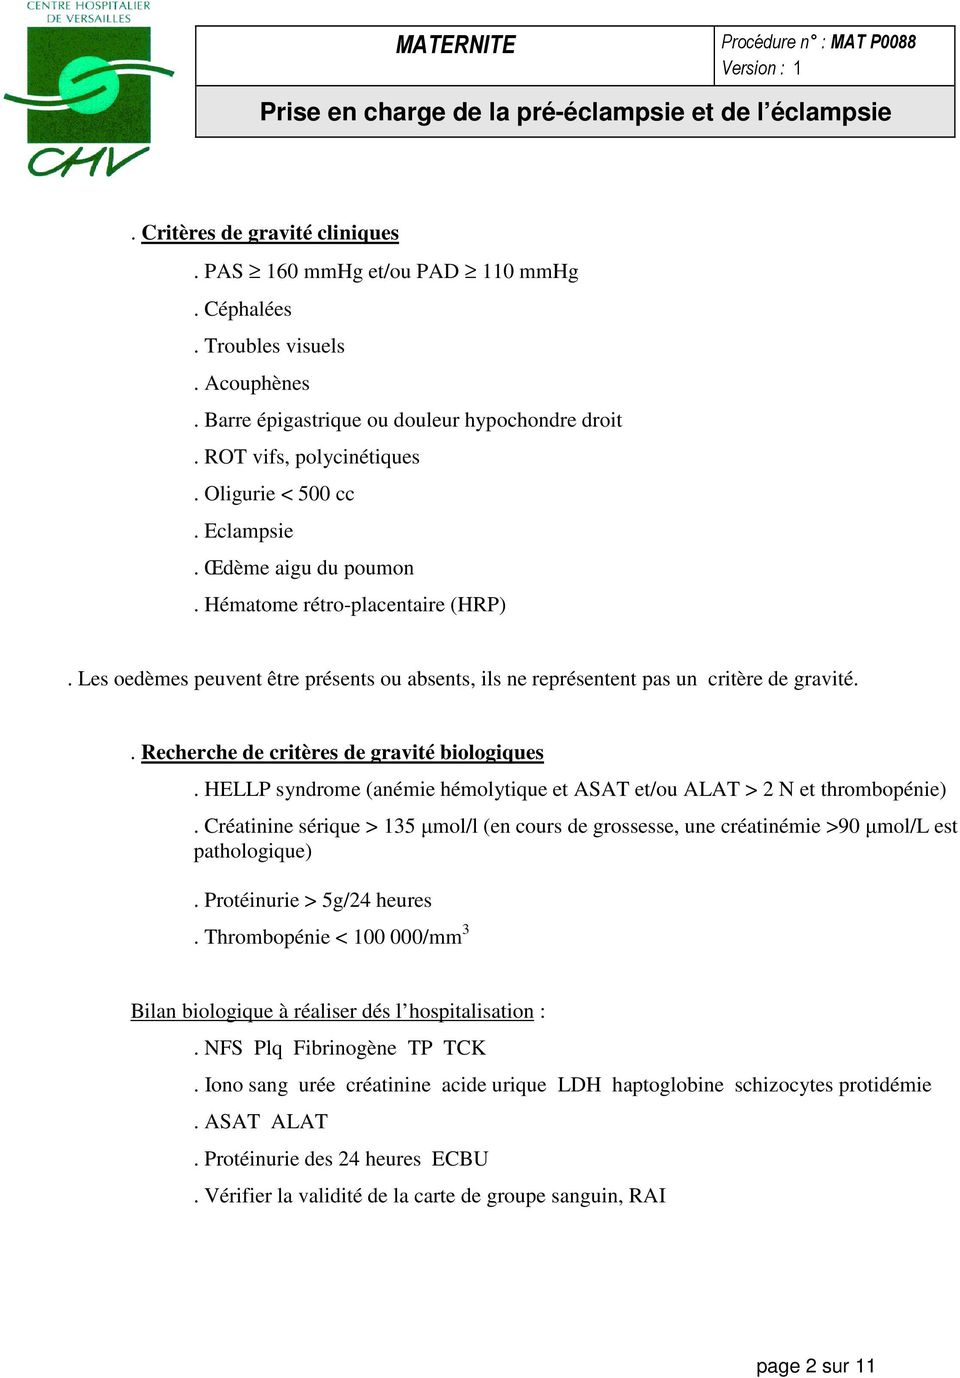 . Recherche de critères de gravité biologiques. HELLP syndrome (anémie hémolytique et ASAT et/ou ALAT > 2 N et thrombopénie).